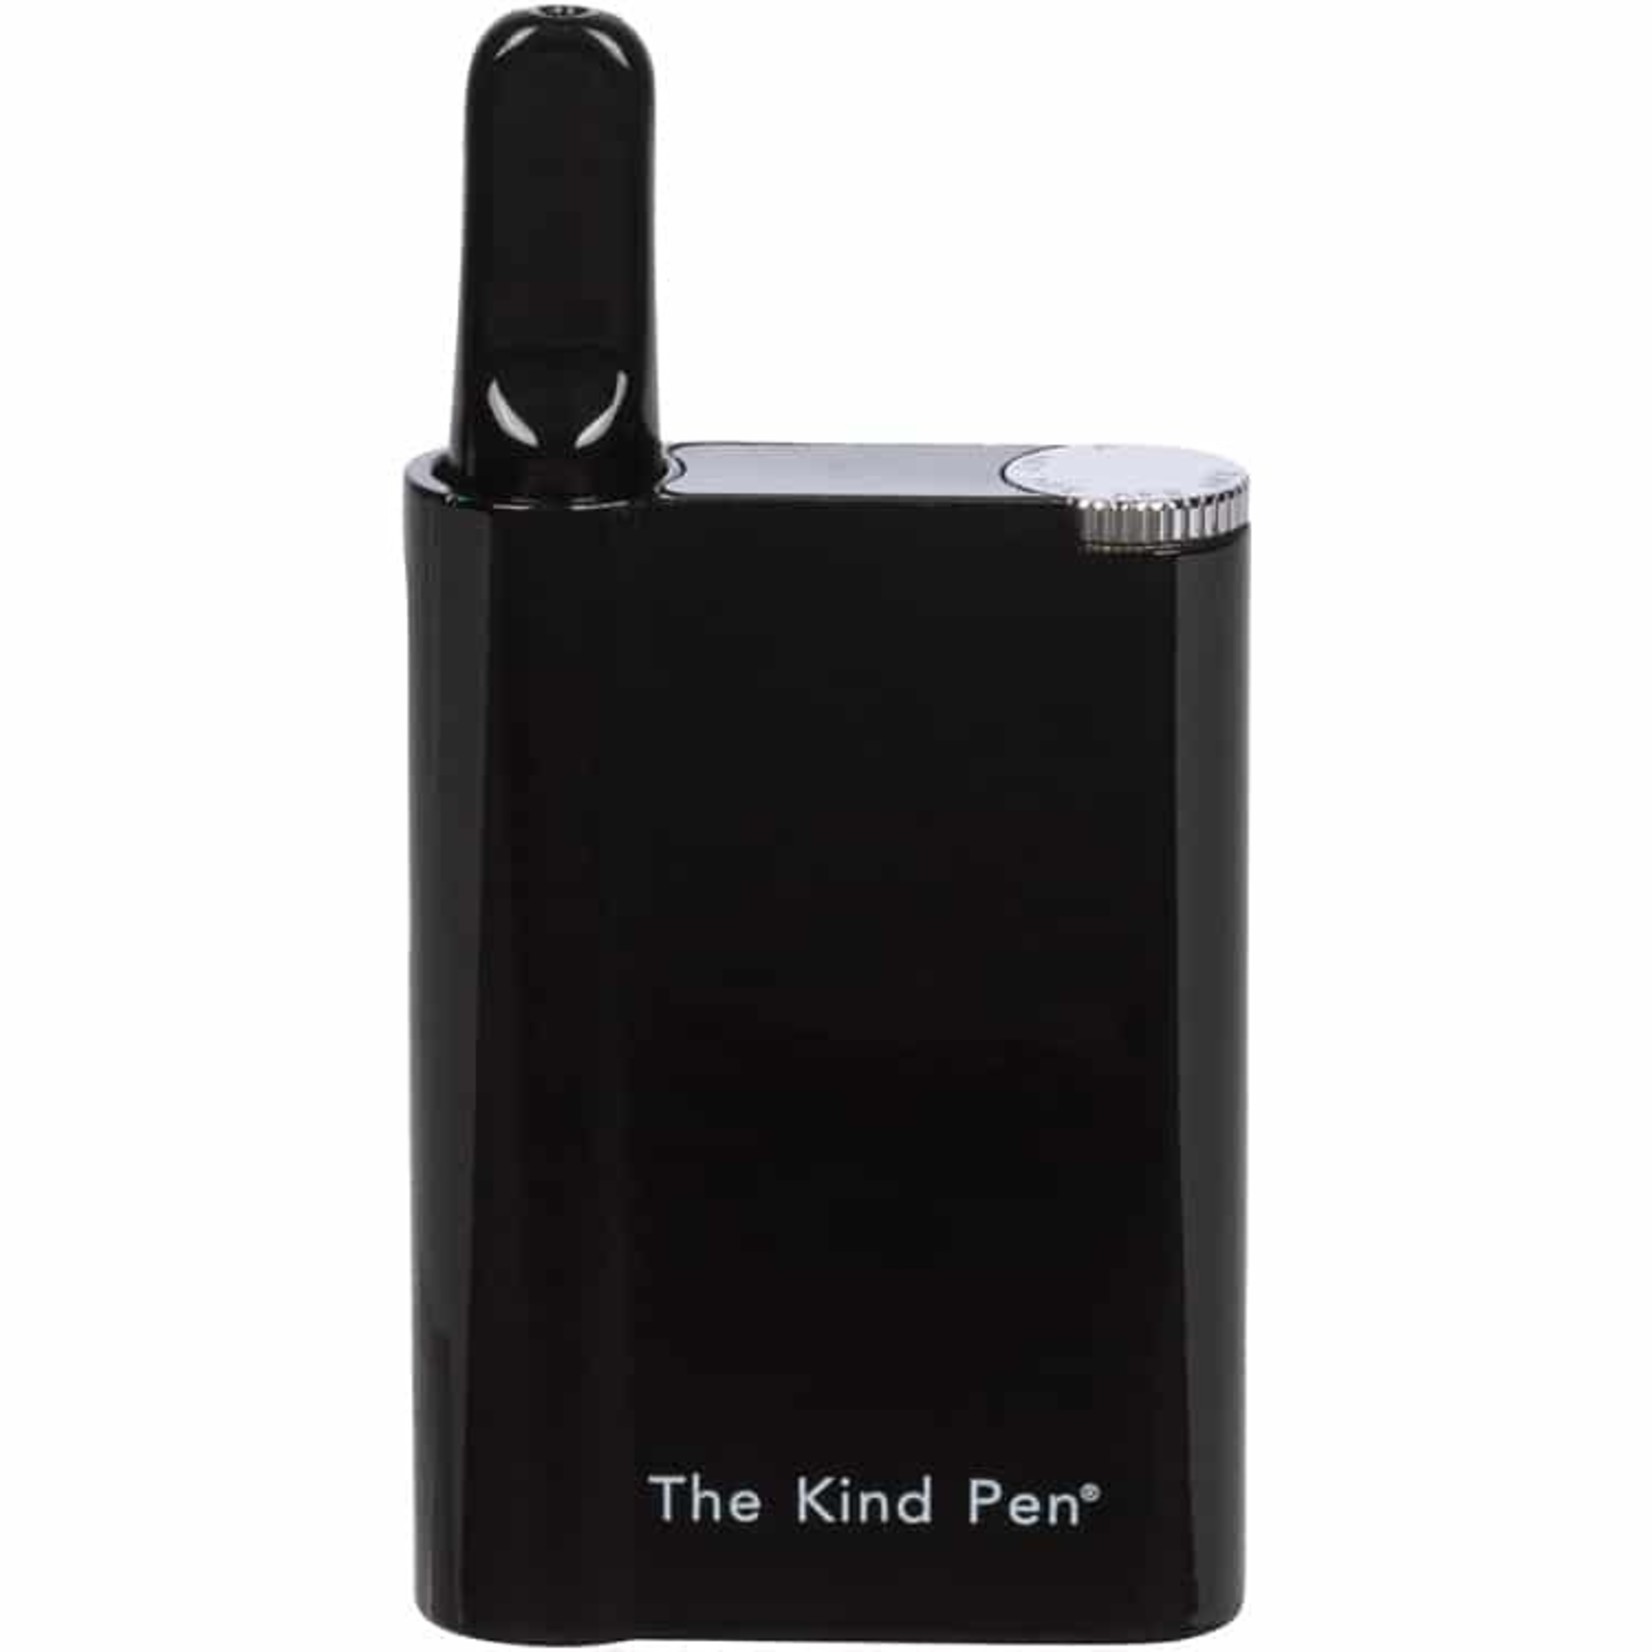 Kind Pen PURE VAPORIZER KIT